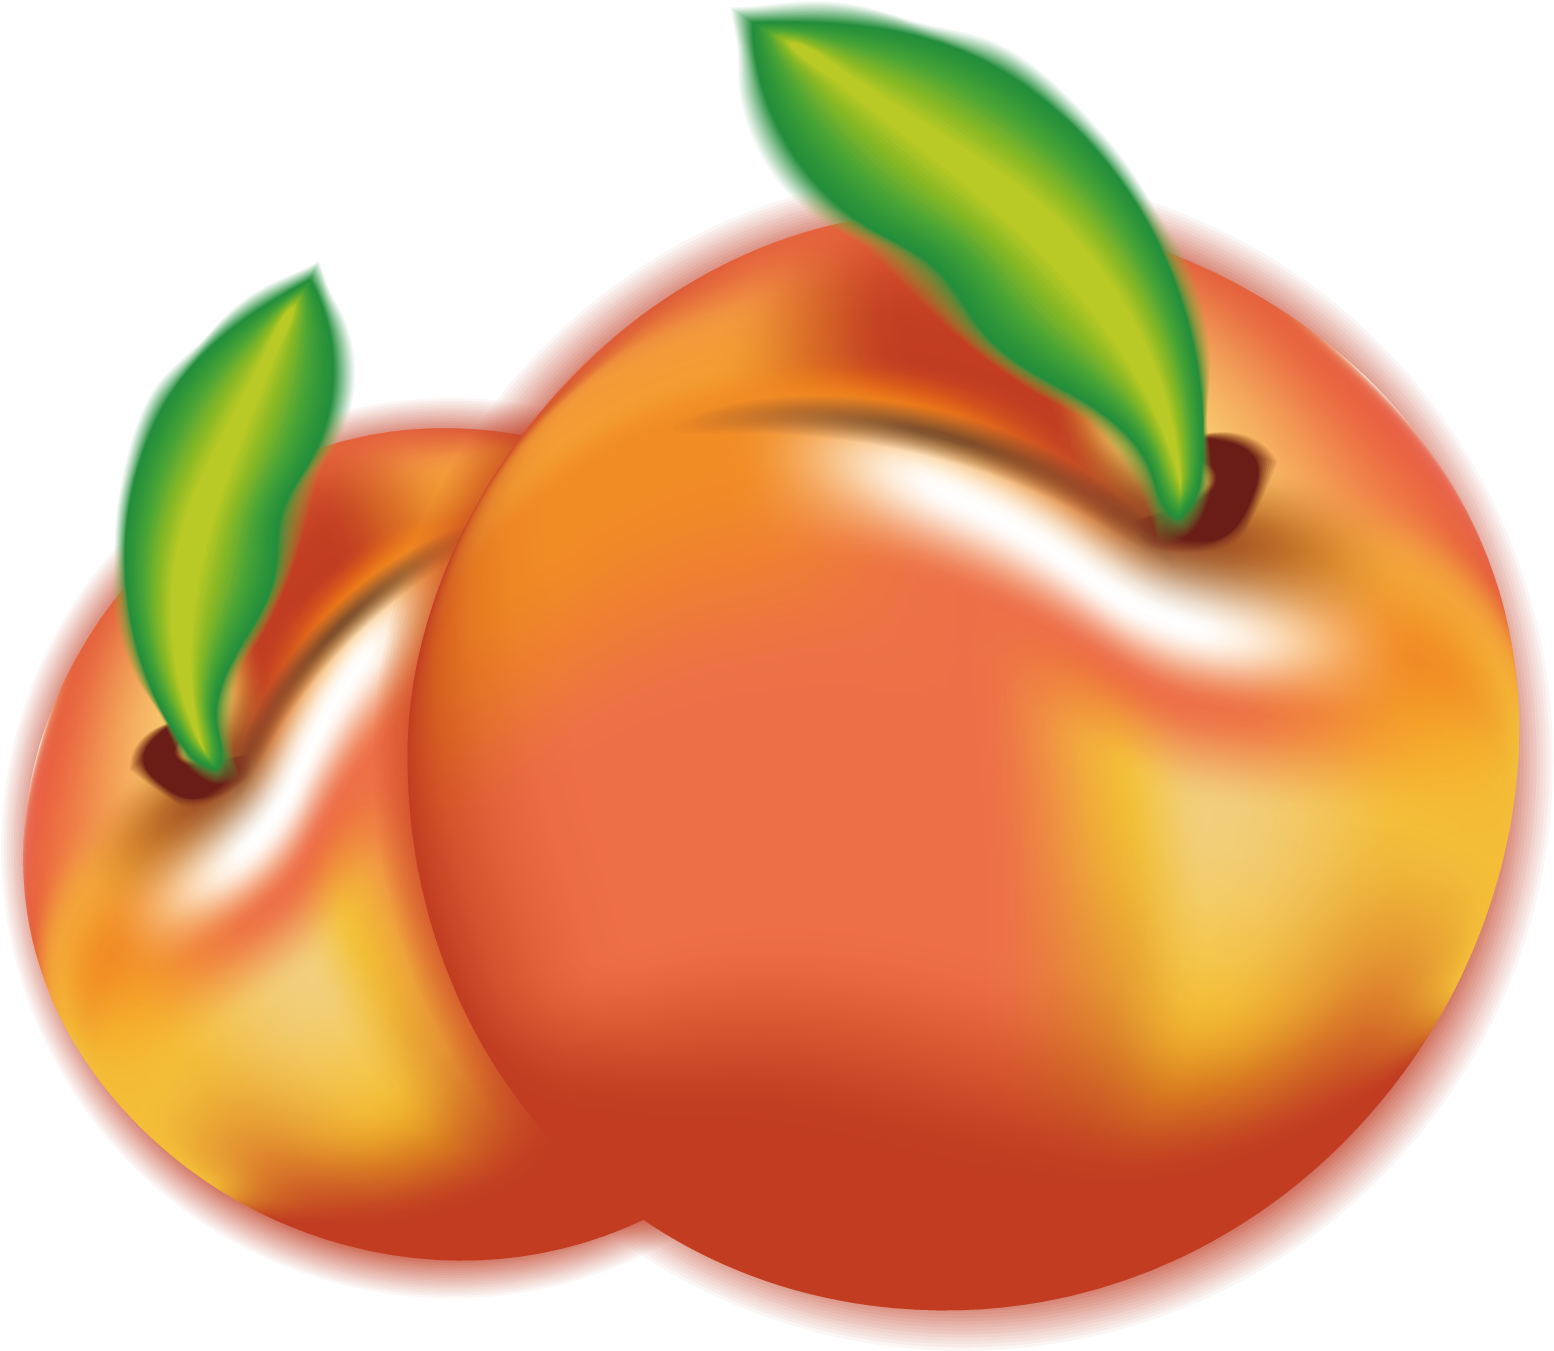 Peach Plum Fruit Euclidean Vector - Peach Plum Fruit Euclidean Vector (1600x1600)